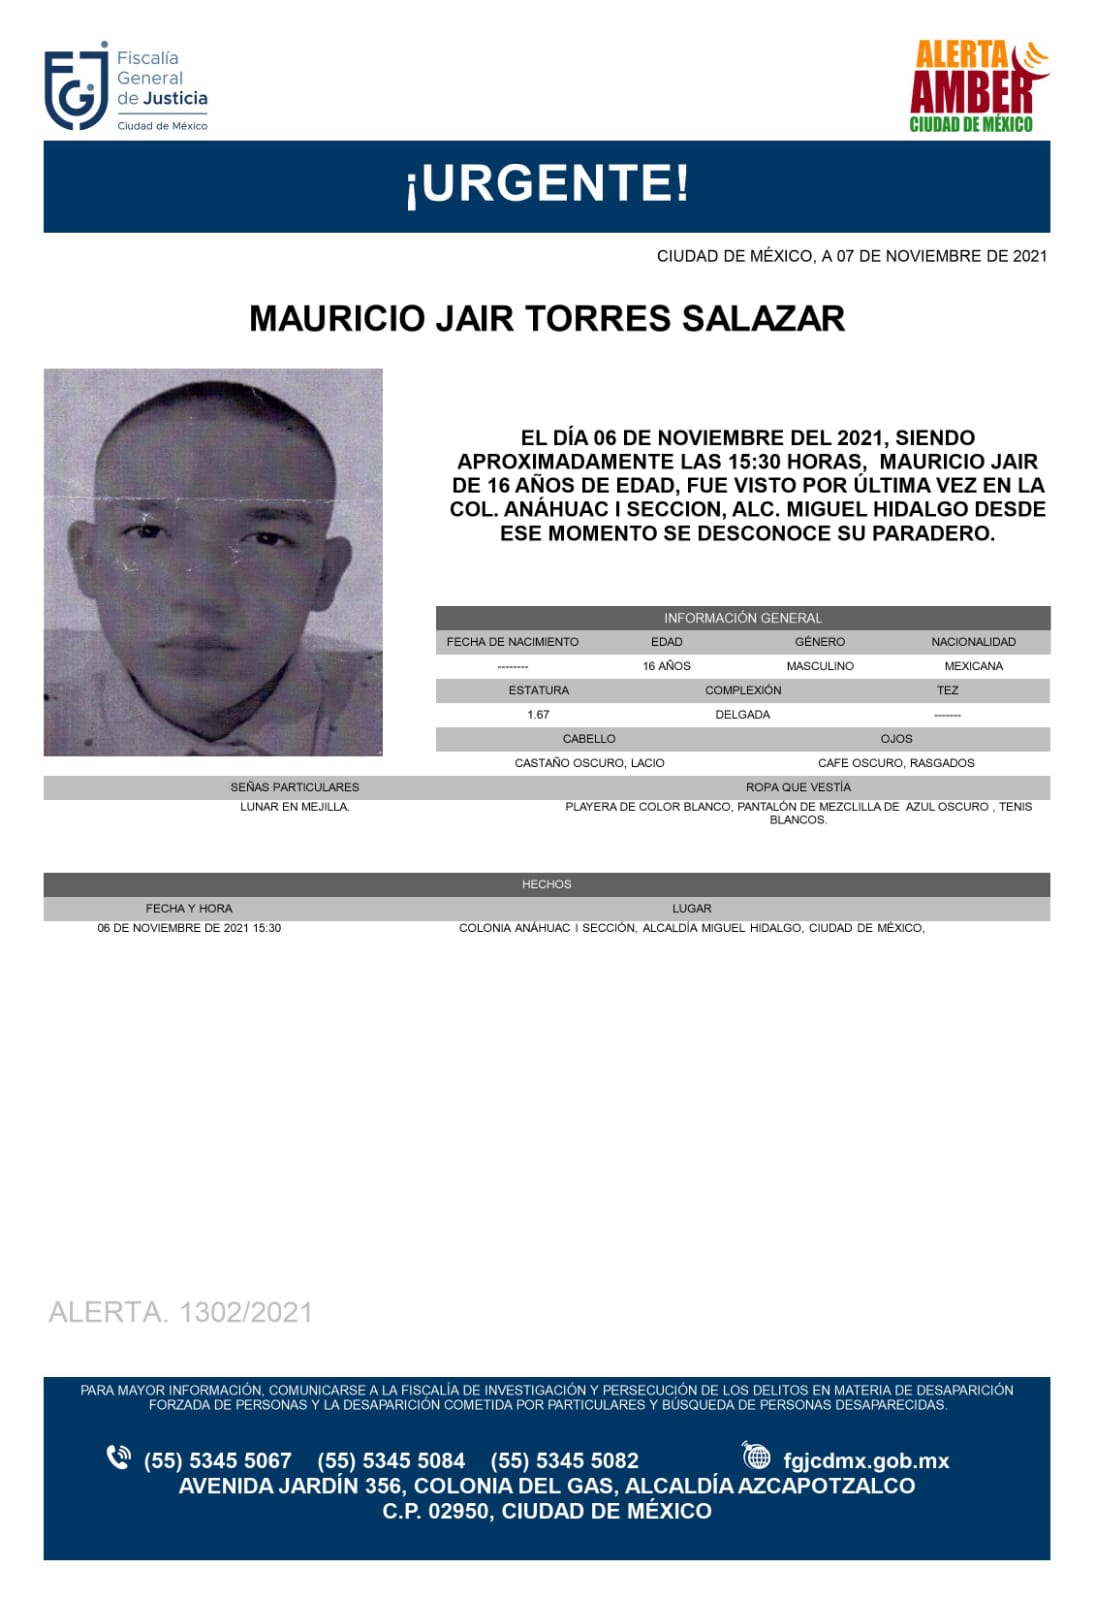 Activan Alerta Amber para localizar a Mauricio Jair Torres Salazar